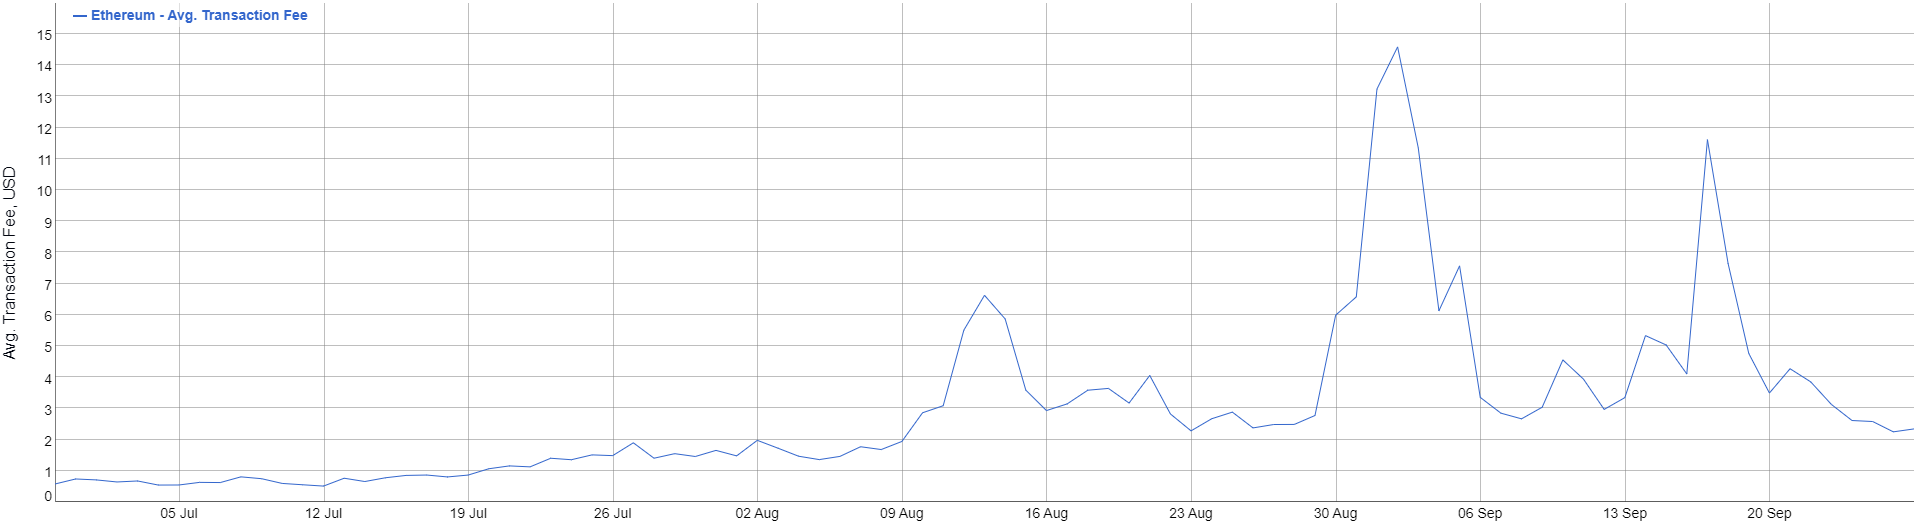 Комиссии в сети Ethereum упали с рекордных $14,60 до $2,25